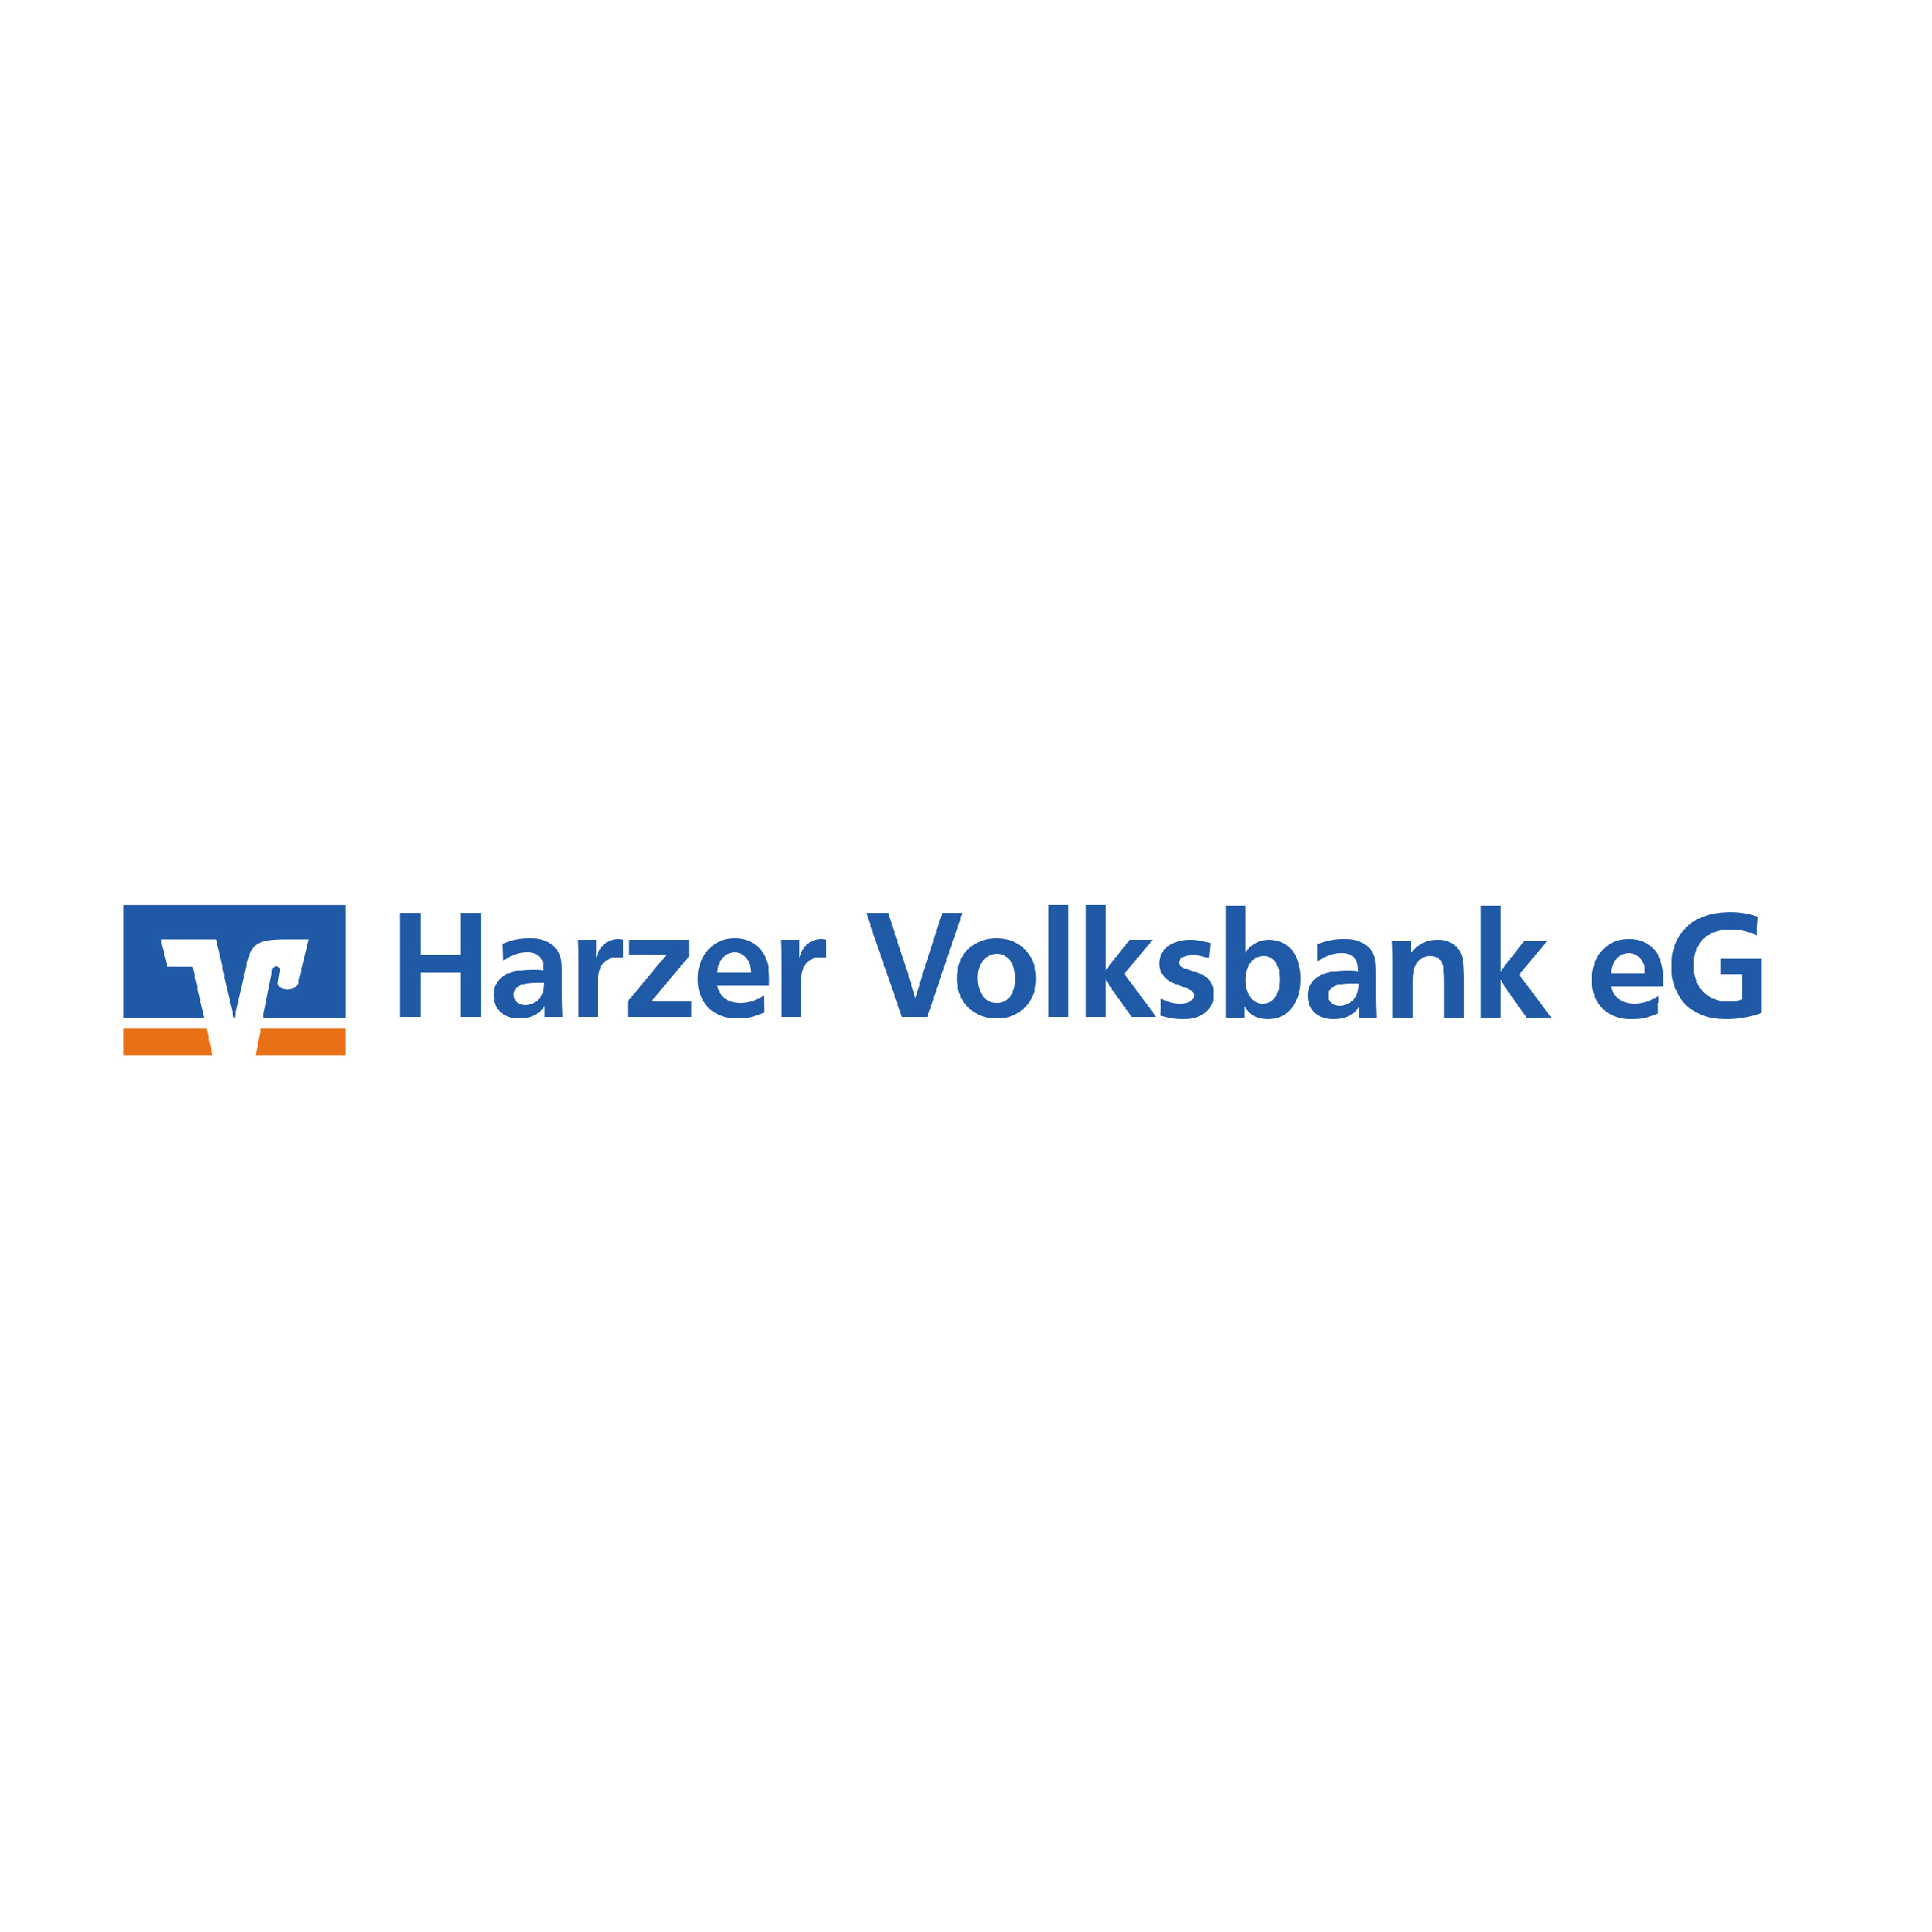 Harzer Volksbank eG